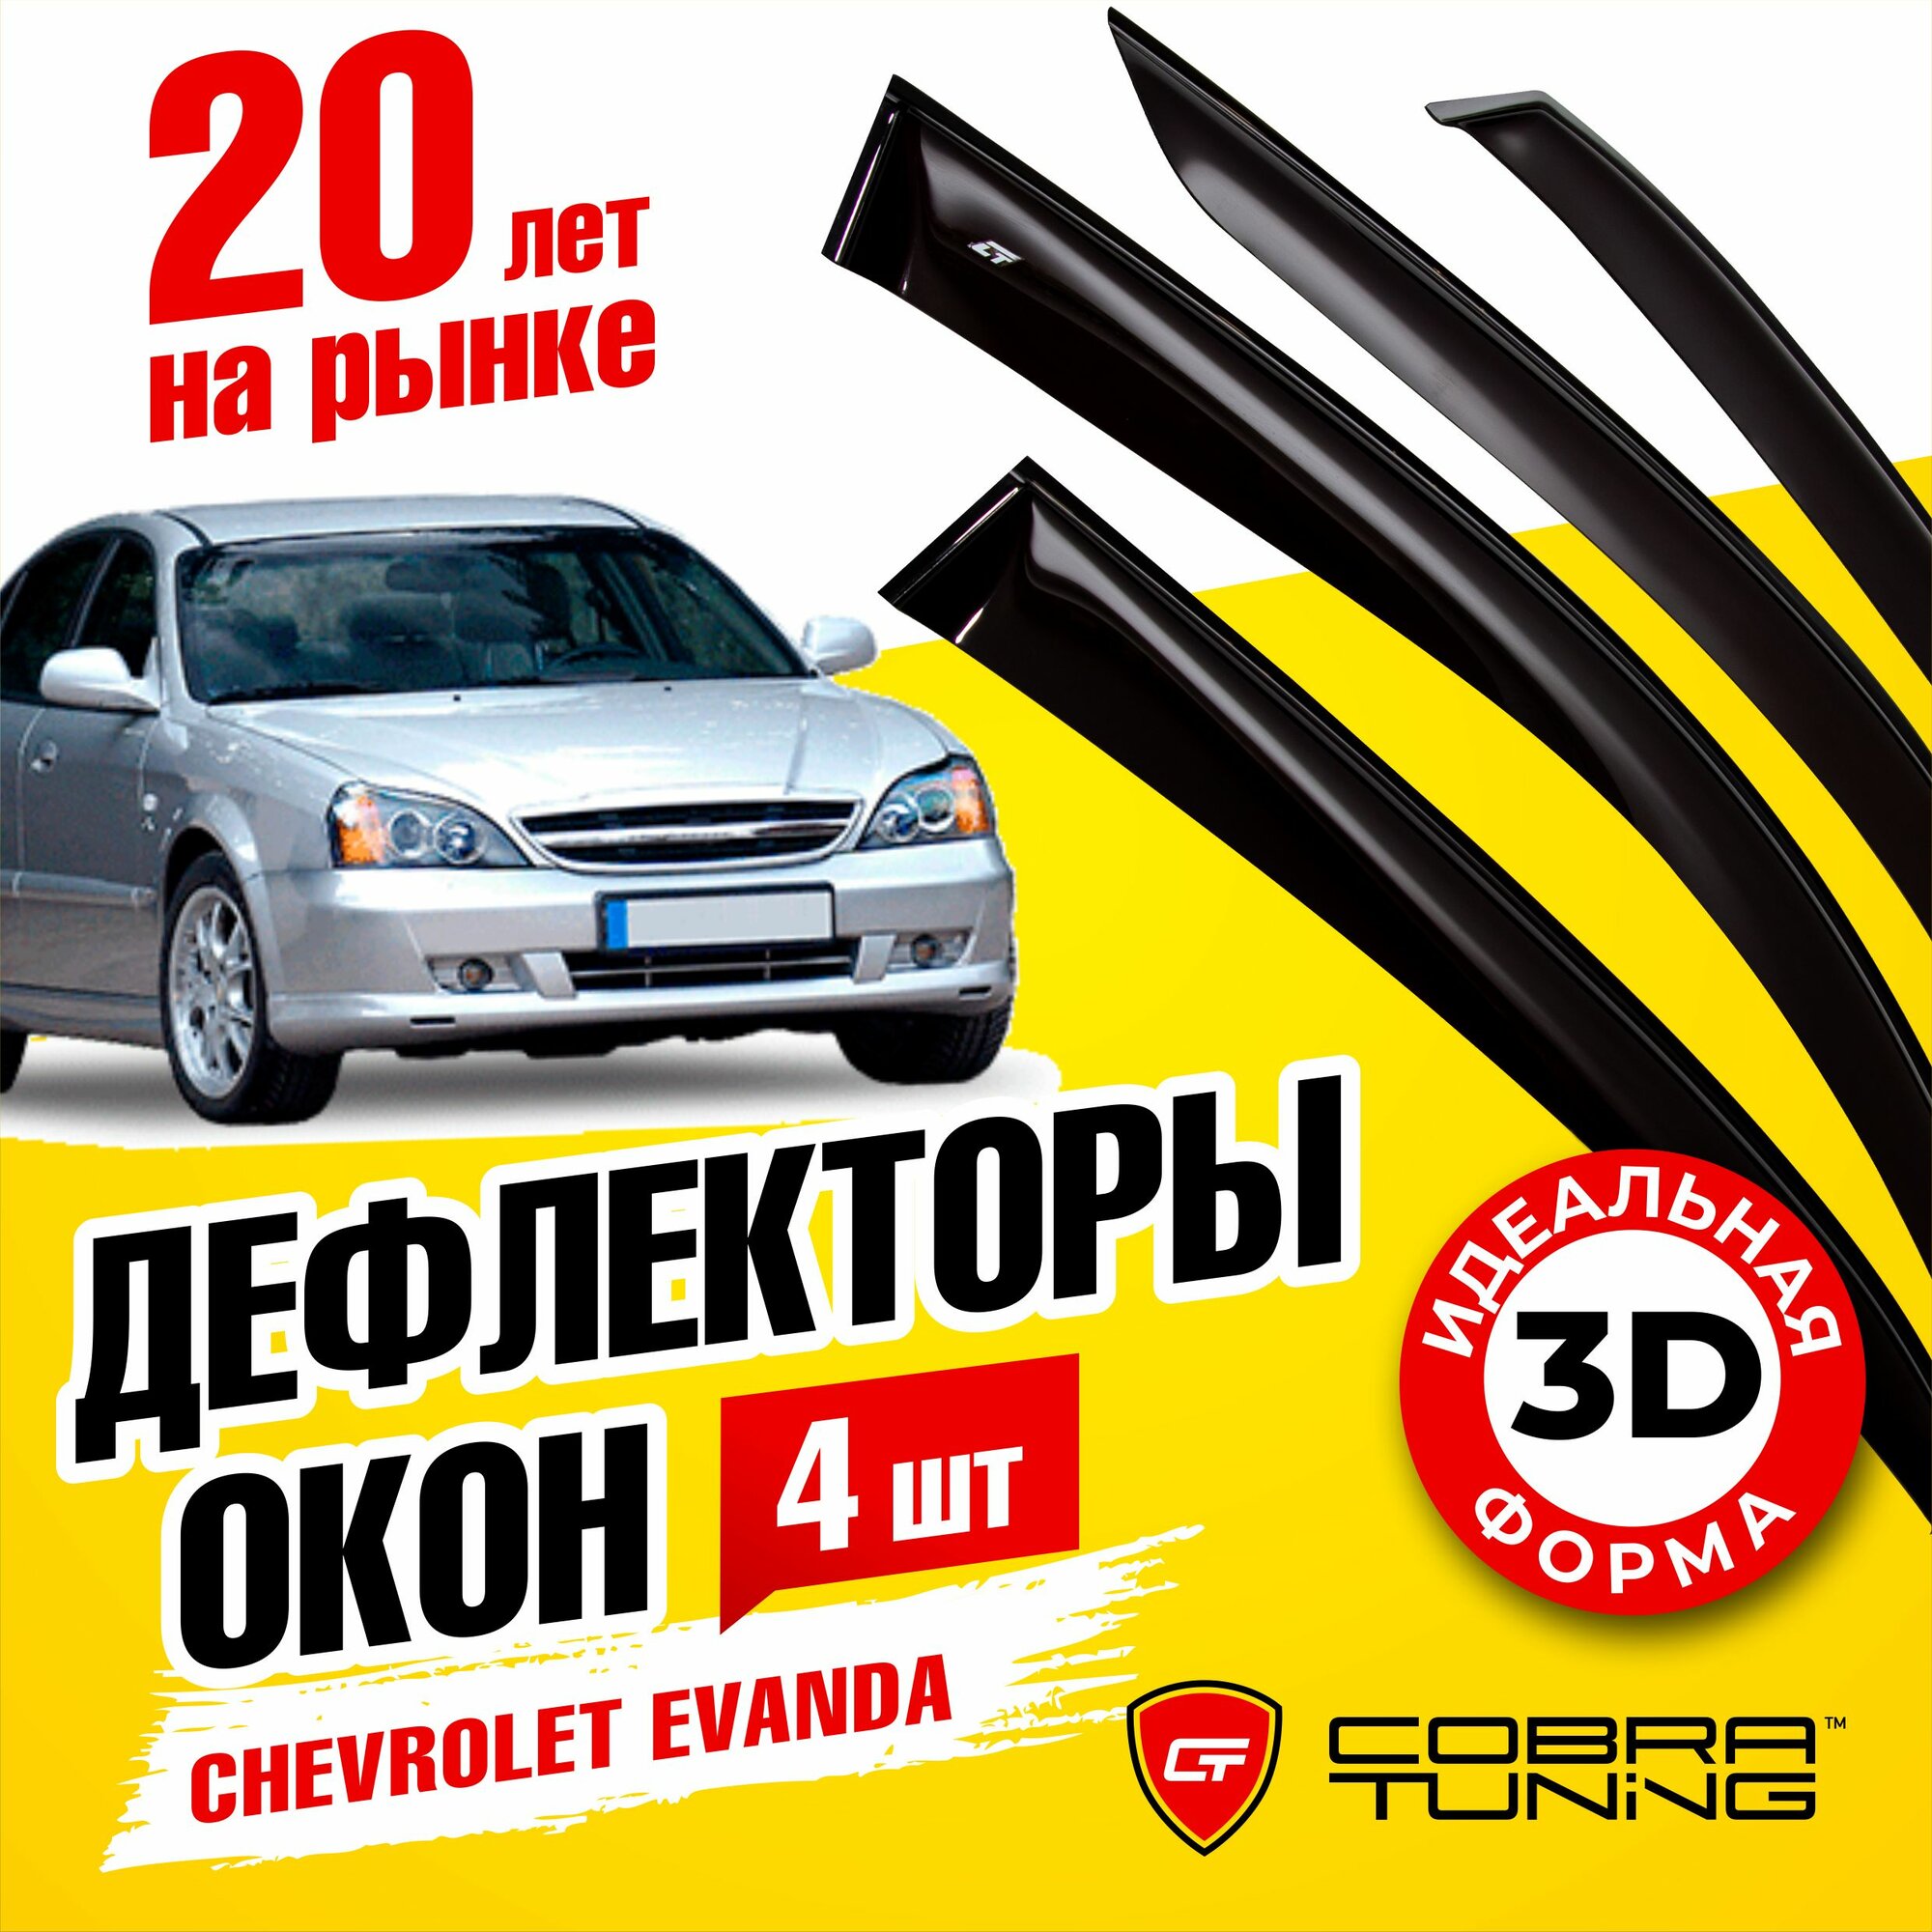 Дефлекторы боковых стекол Cobra Tuning на Chevrolet Evanda Sd Sedan 2004-2006 - Ветровики боковых окон для Шевроле Эванда Сд Седан 2004-2006